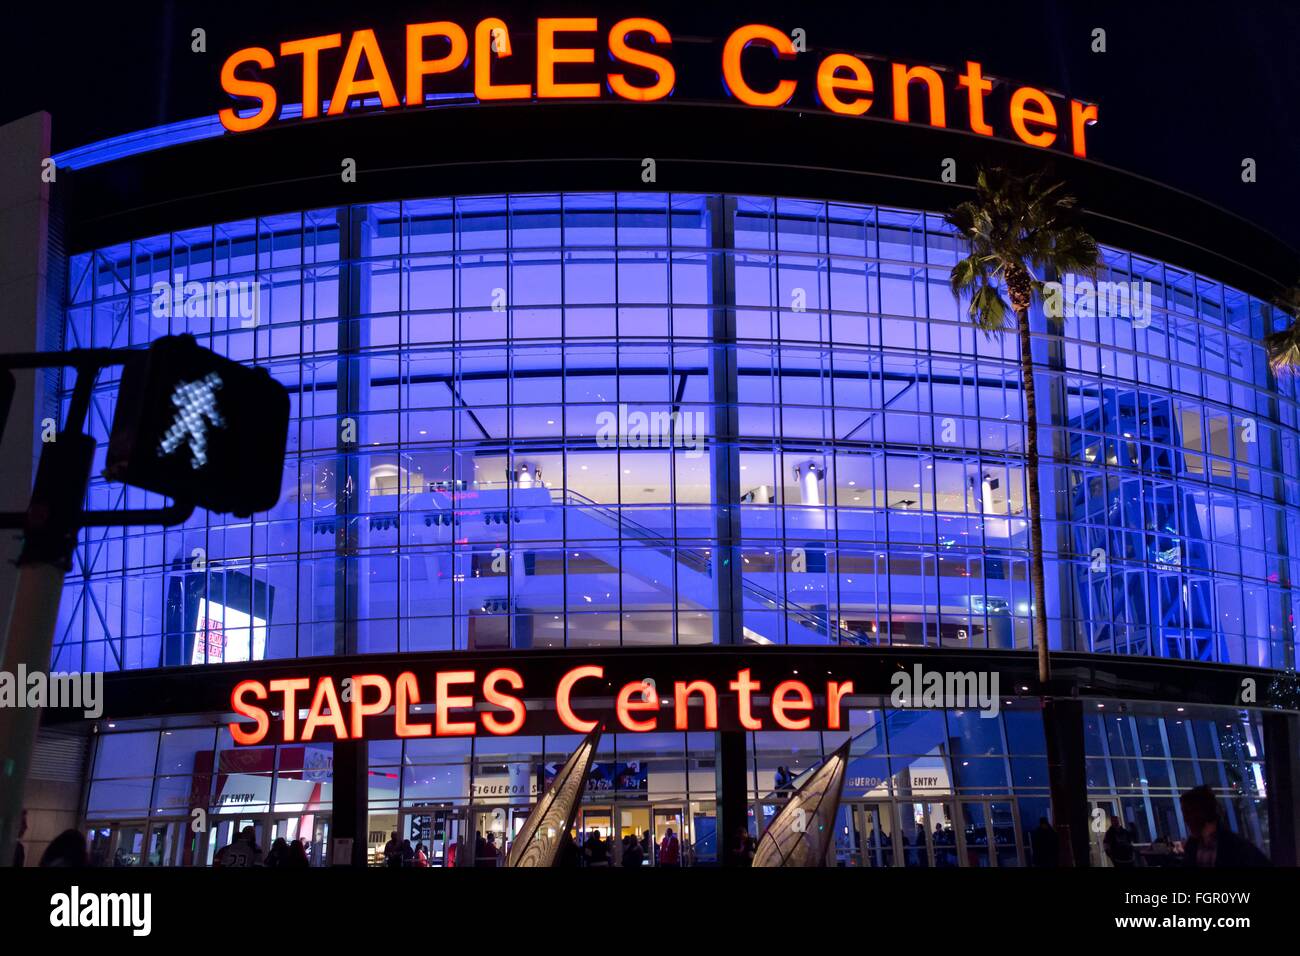 Gli illuminati Staples Center, un multi-purpose sports arena di Los Angeles, nel dicembre 2015. Foto Stock